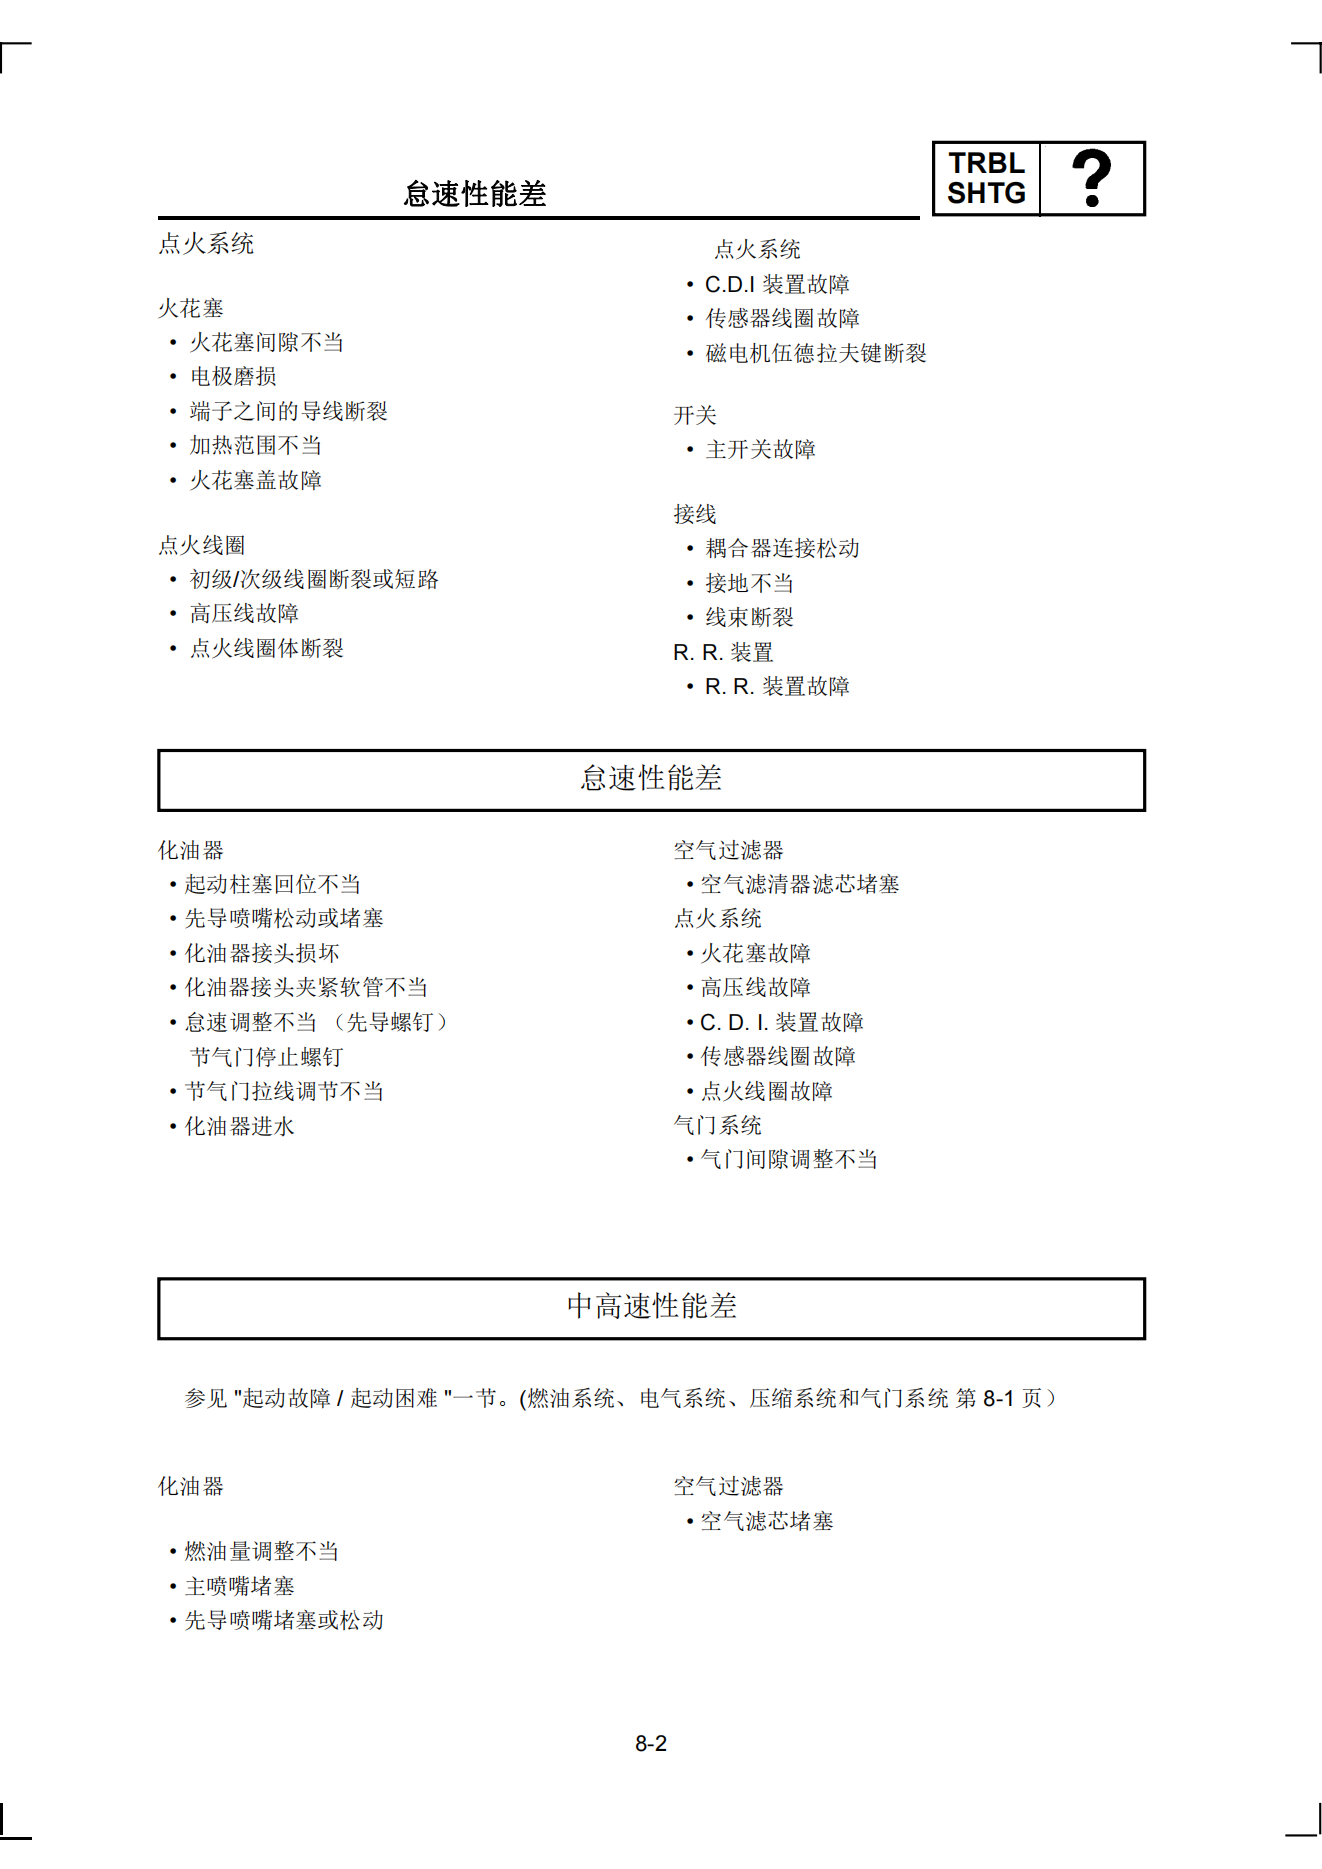 简体中文雅马哈ybr125维修手册插图4